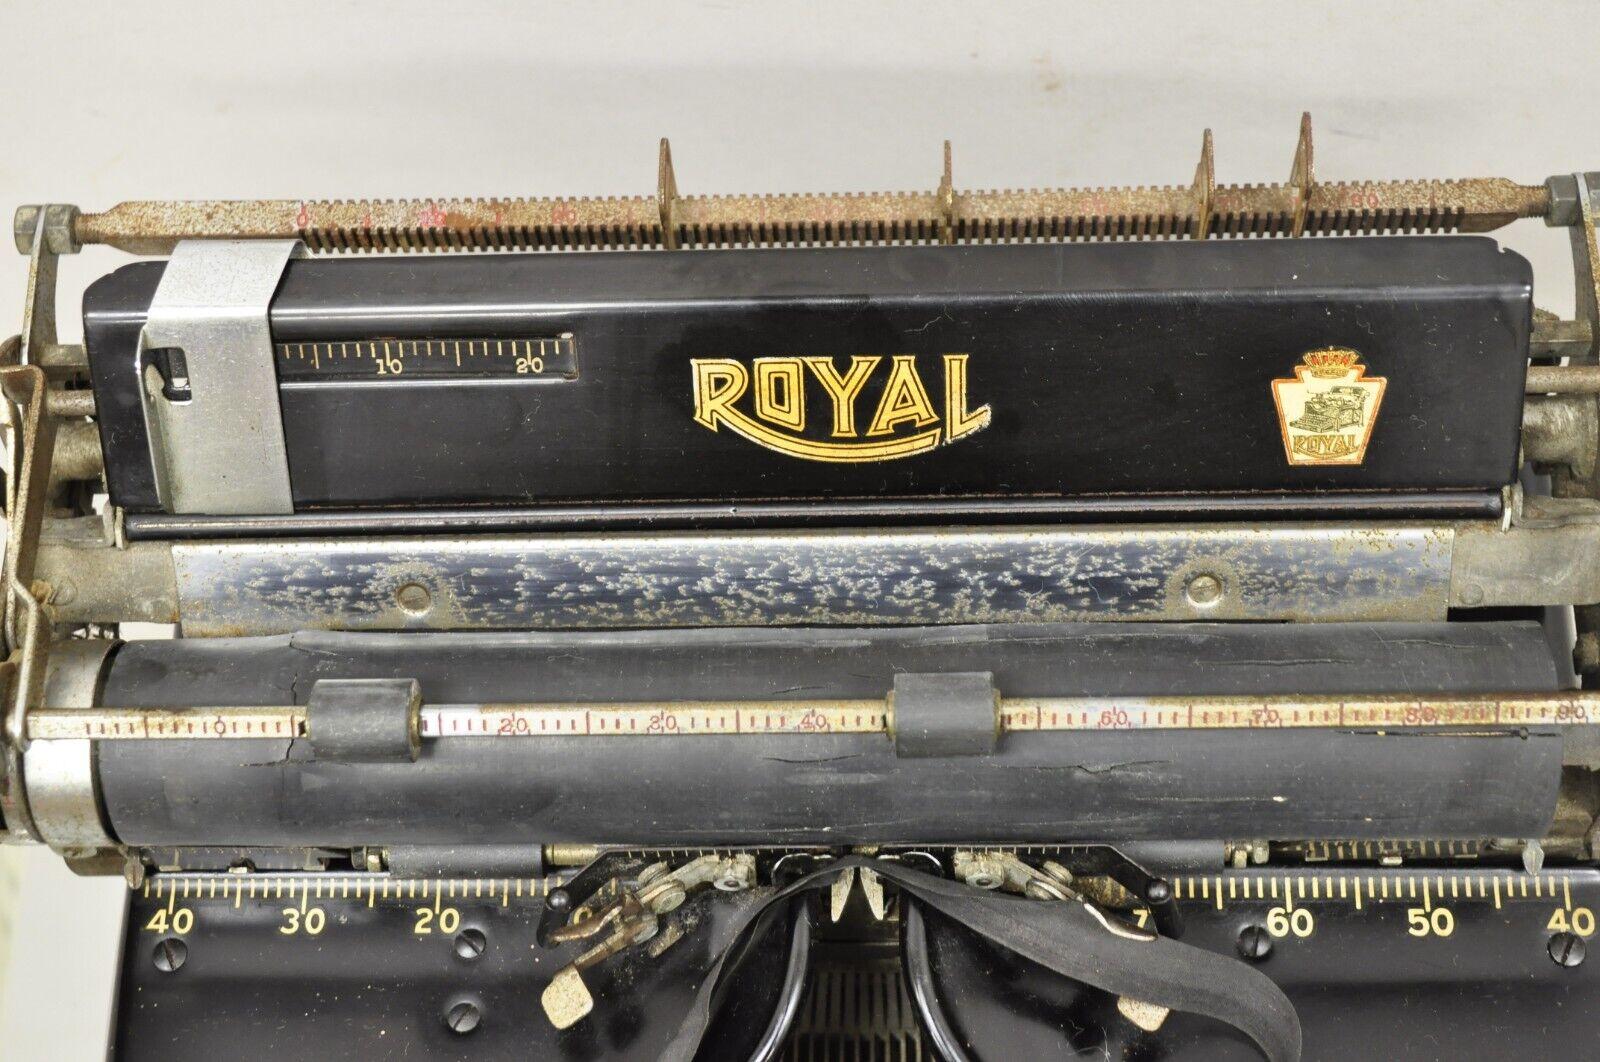 royal manual typewriter